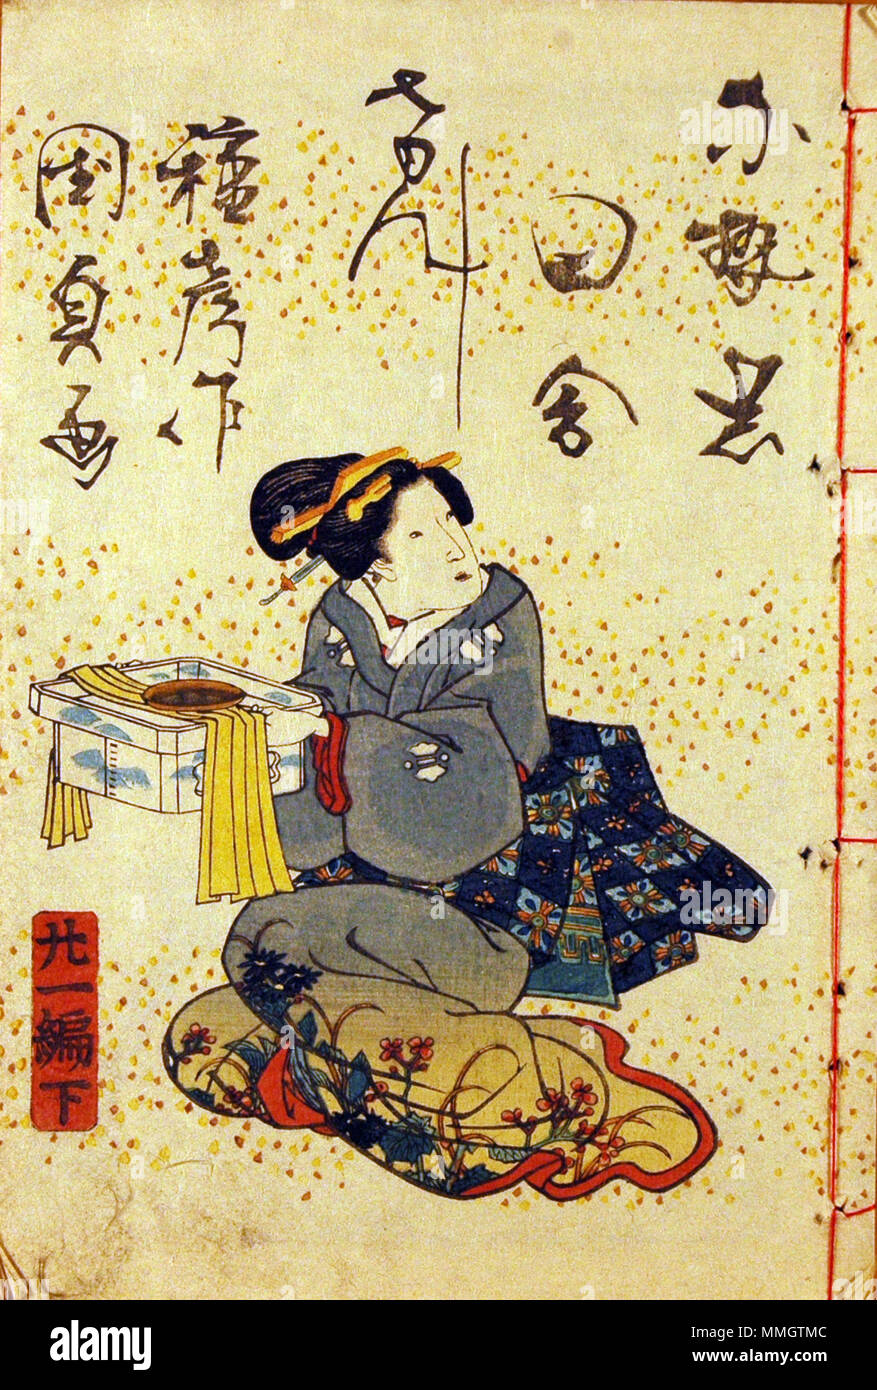 . Englisch: Beitritt Artikelnummer: 2008.102.2 Anzeige Artist: Utagawa Kunisada Anzeige Titel: 'ein Land Genji, Vol. 21, No. 2' Übersetzung (s): Nise Murasaki inaka Genji Titel der Serie: "Geschichten von Genji, Country Style' Suite Name: Nise murasaki Inaka Genji Erstellungsdatum: 1836 Medium: Holzschnitt Höhe: 7. Breite: 4 cm. Anzeige Abmessungen: 7 x 4 3/4 in. x 1/8 in. (17,78 cm x 12,07 cm x 0,32 cm) Herausgeber: tsuruya Kiemon Kreditlinie: "Geschenk von Captain George B. Powell, Jr., JAGC, USN' Collection: Die San Diego Museum der Kunst. 28 Mai 2008, 15:00:57. Englisch: thesandiegomuseumofartcollection ein Cou Stockfoto